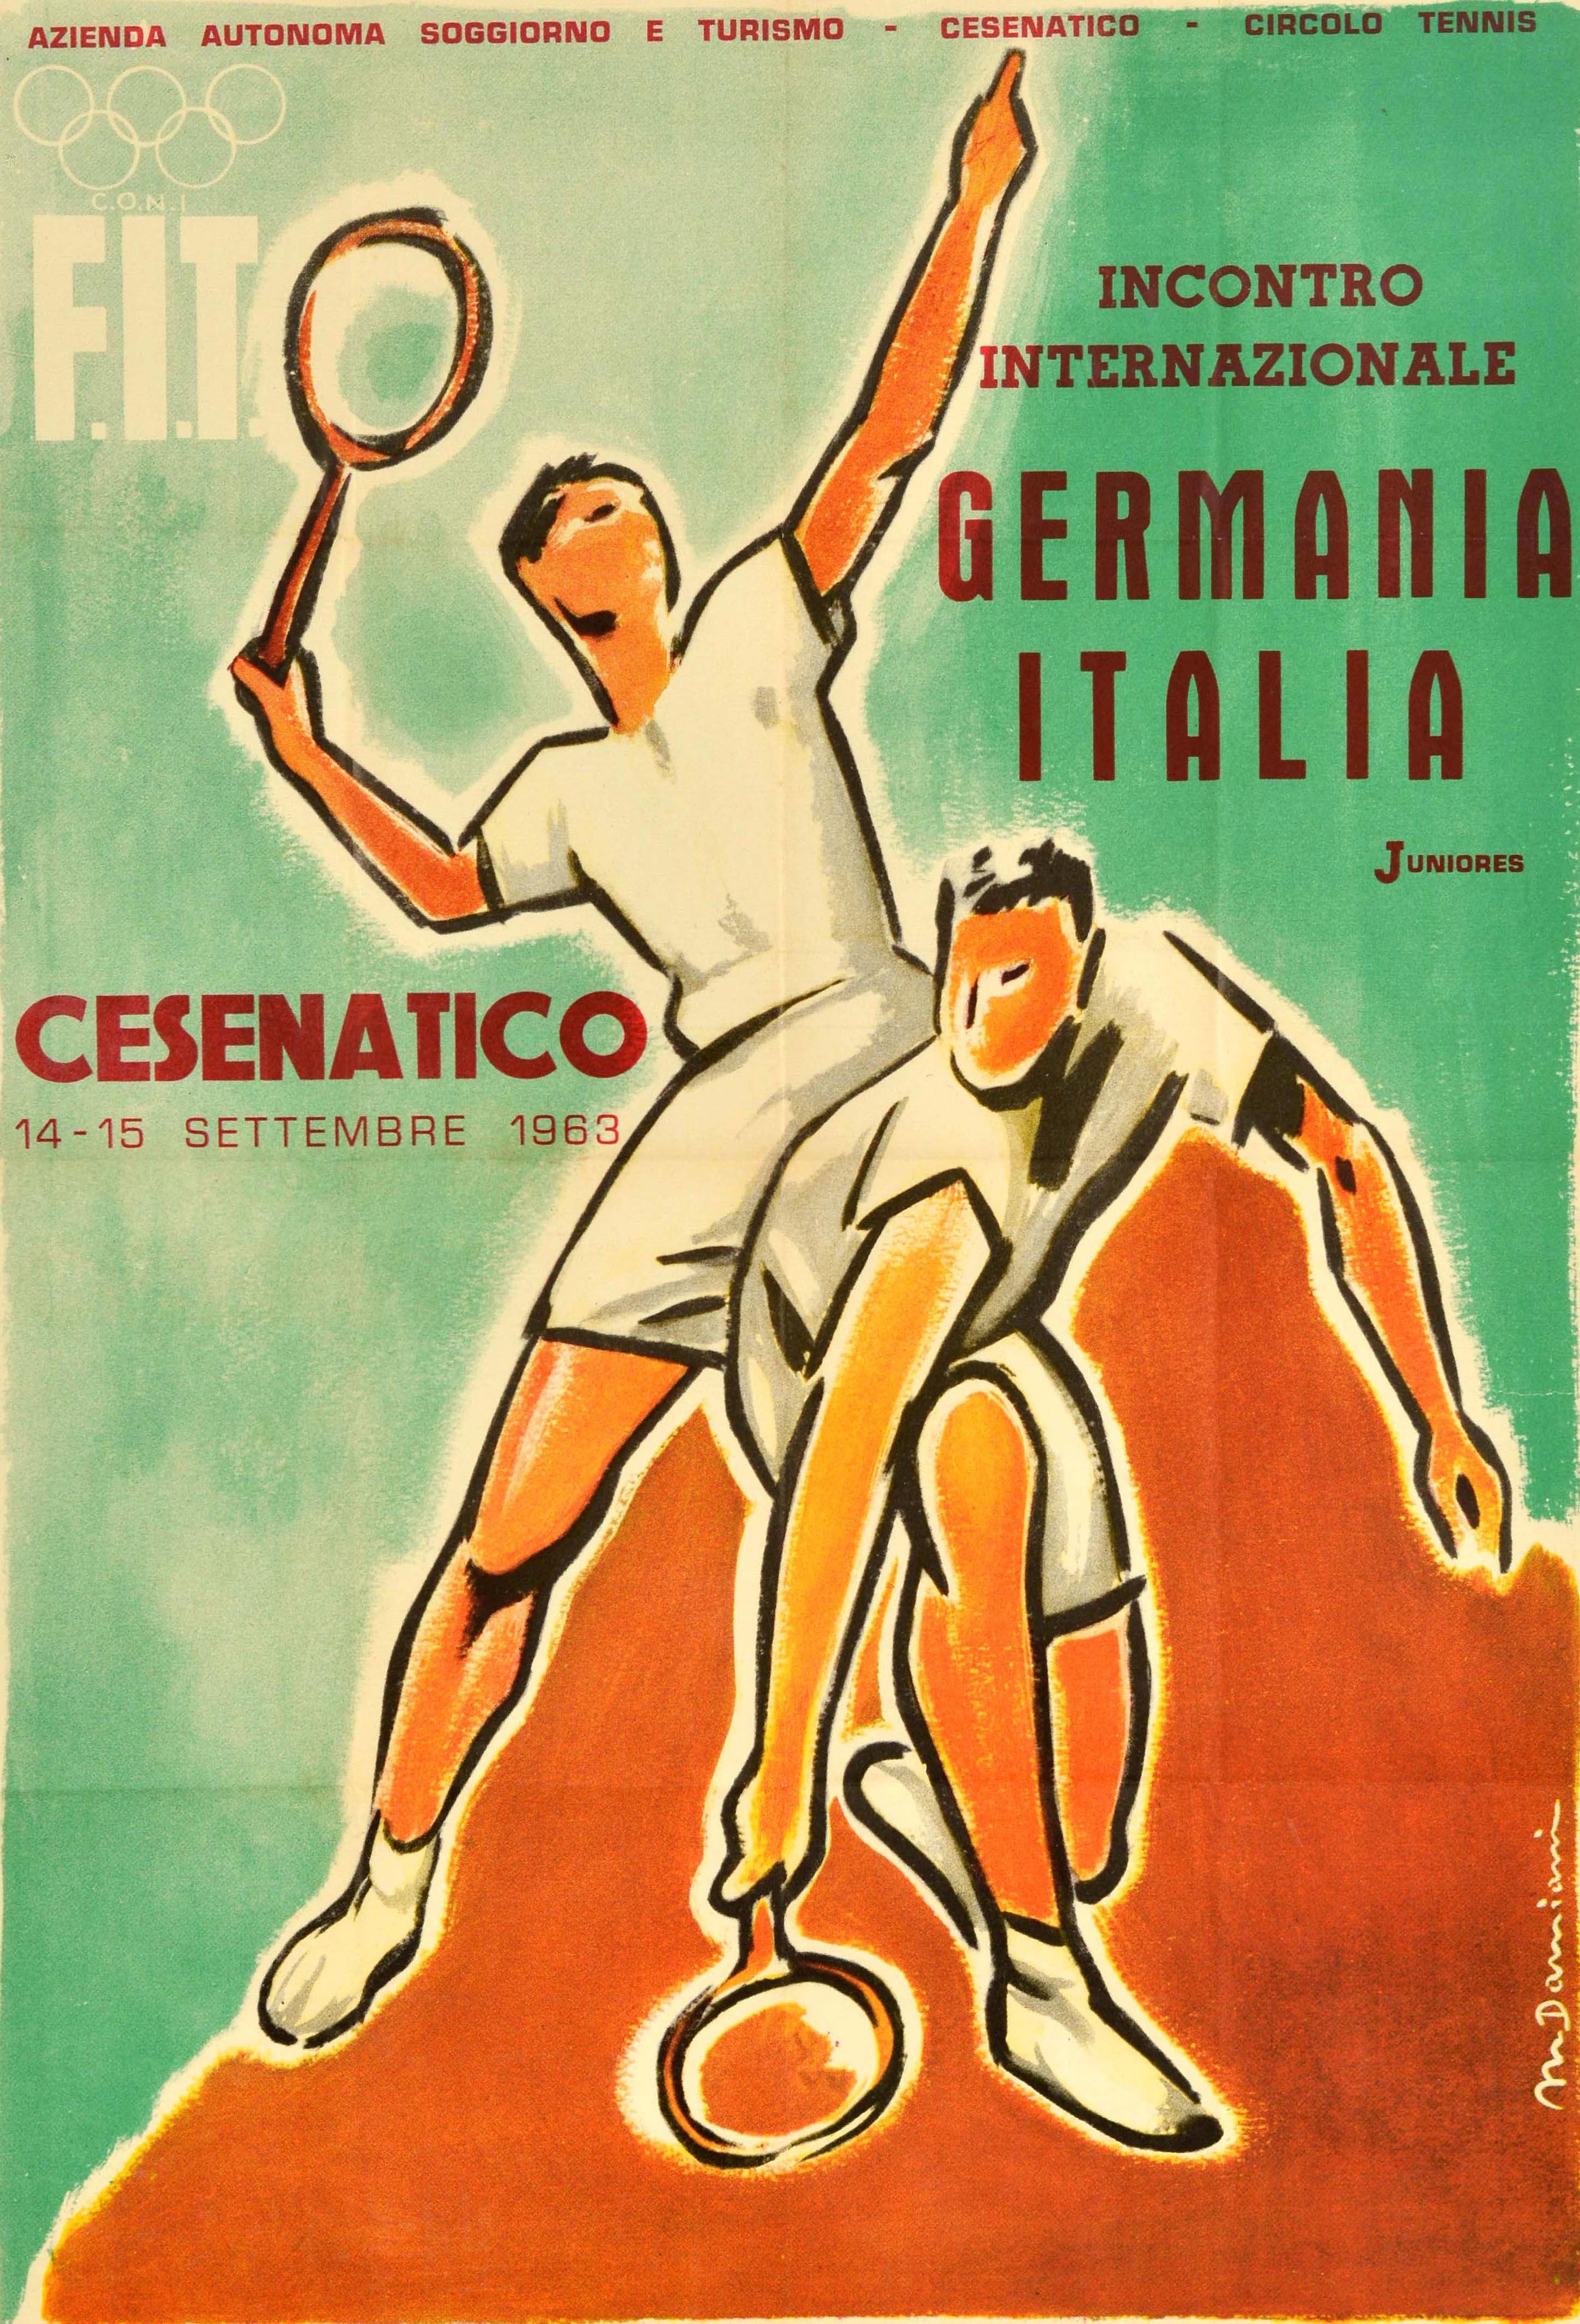 Original Vintage-Sportplakat für das Internationale Treffen Deutschland Italien Junioren / Incontro Internazionale Germania Italia Juniores in Cesenatico vom 14. bis 15. September 1963 mit großen Kunstwerk zeigt zwei Tennisspieler in Aktion hält